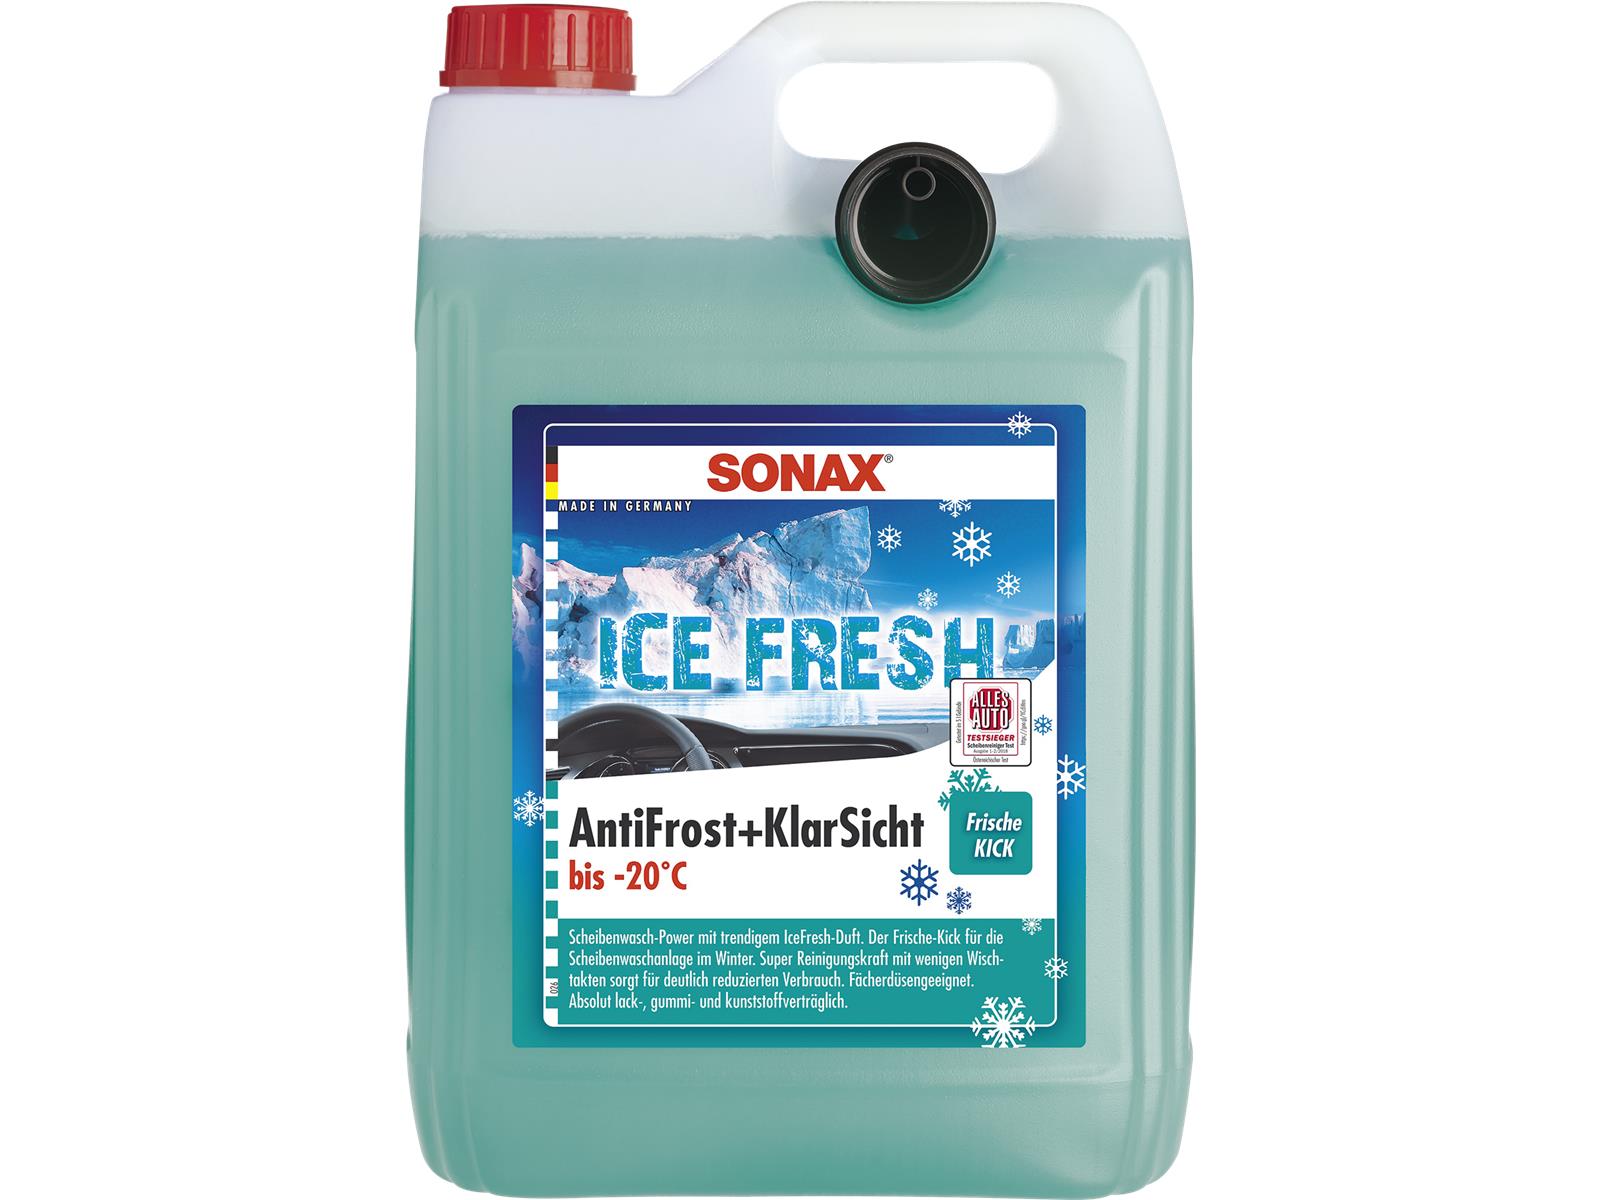 SONAX 01335410 AntiFrost+KlarSicht bis -20°C IceFresh 5 l